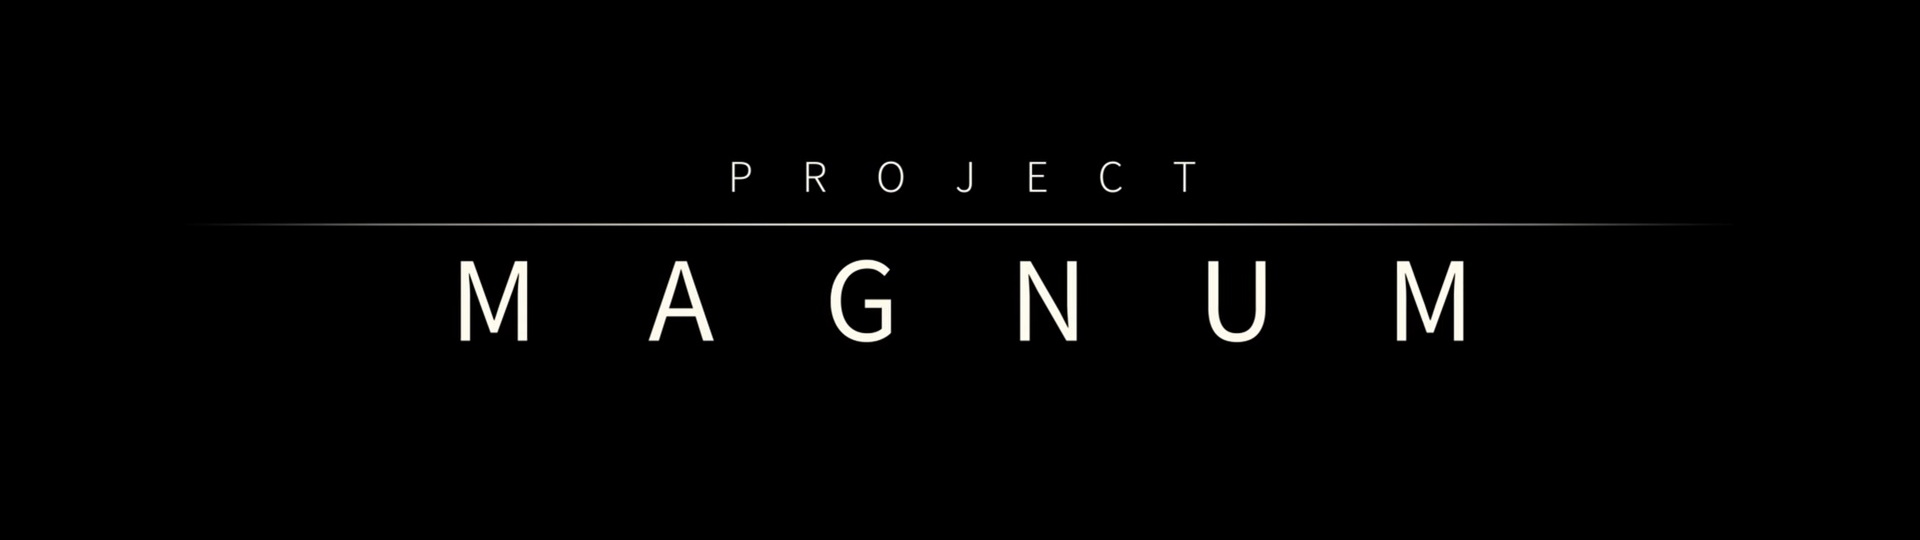 Project Magnum se představuje na první ukázce | Videa